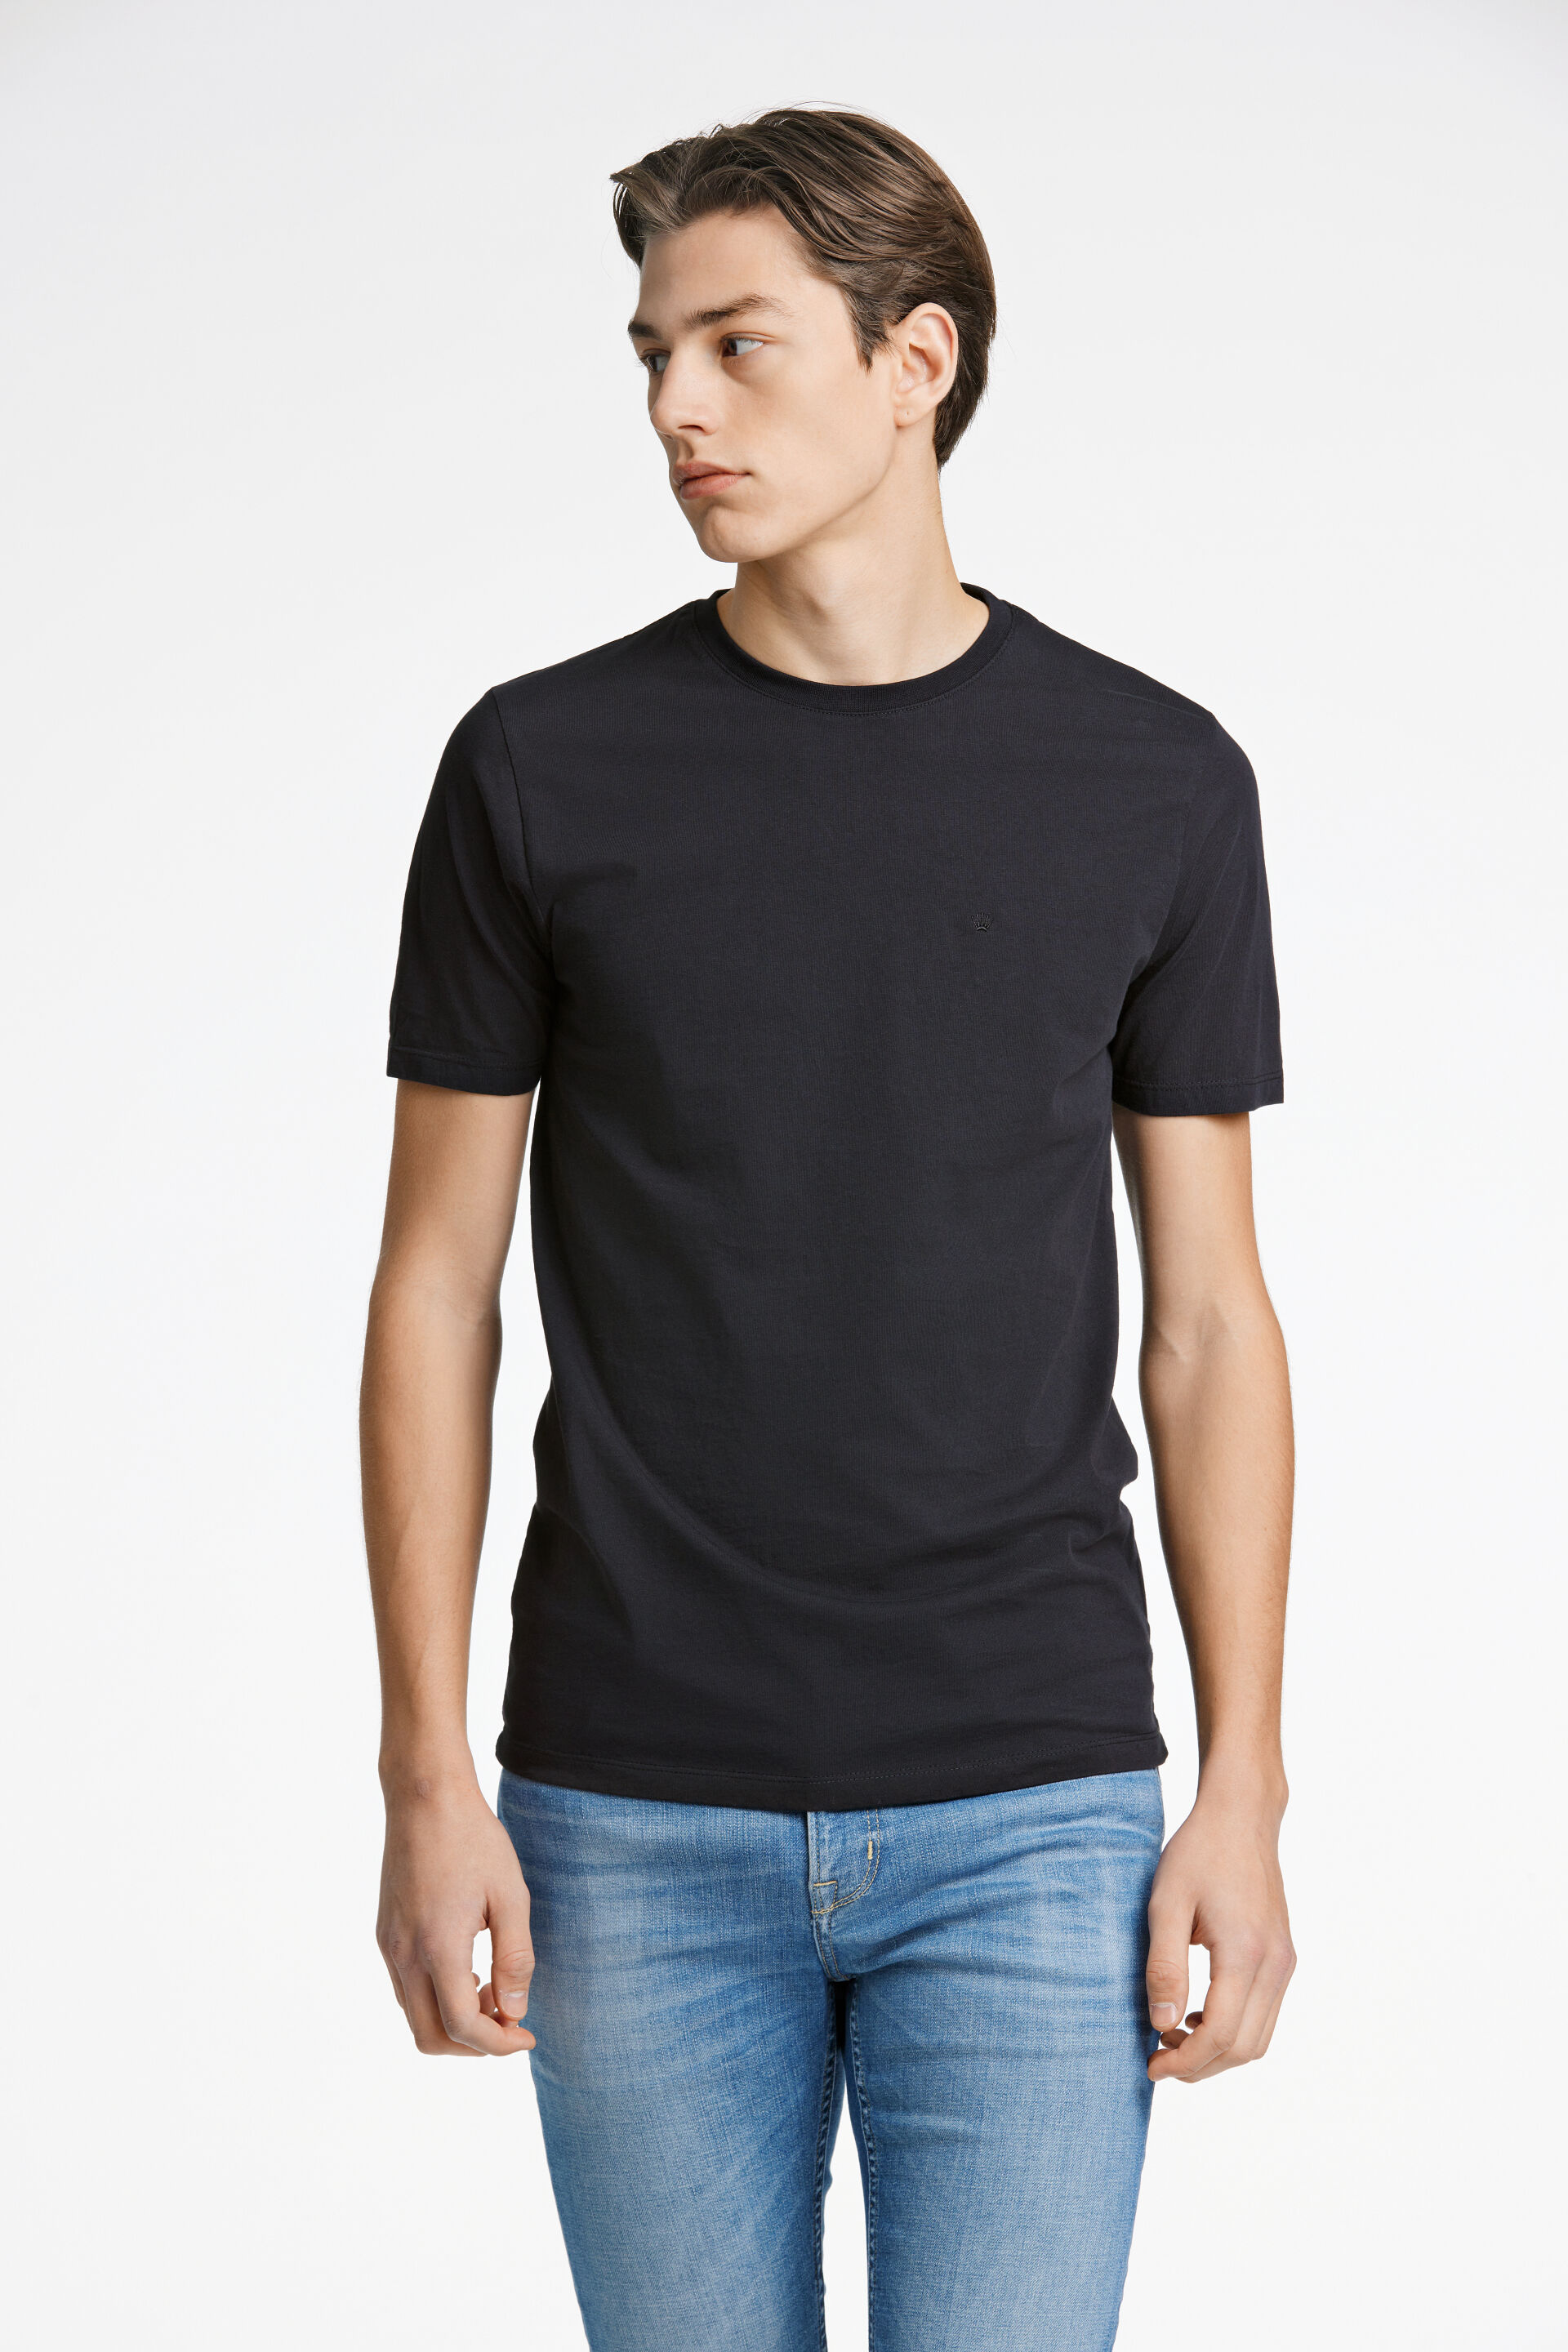 Junk de Luxe  T-shirt Svart 60-40005